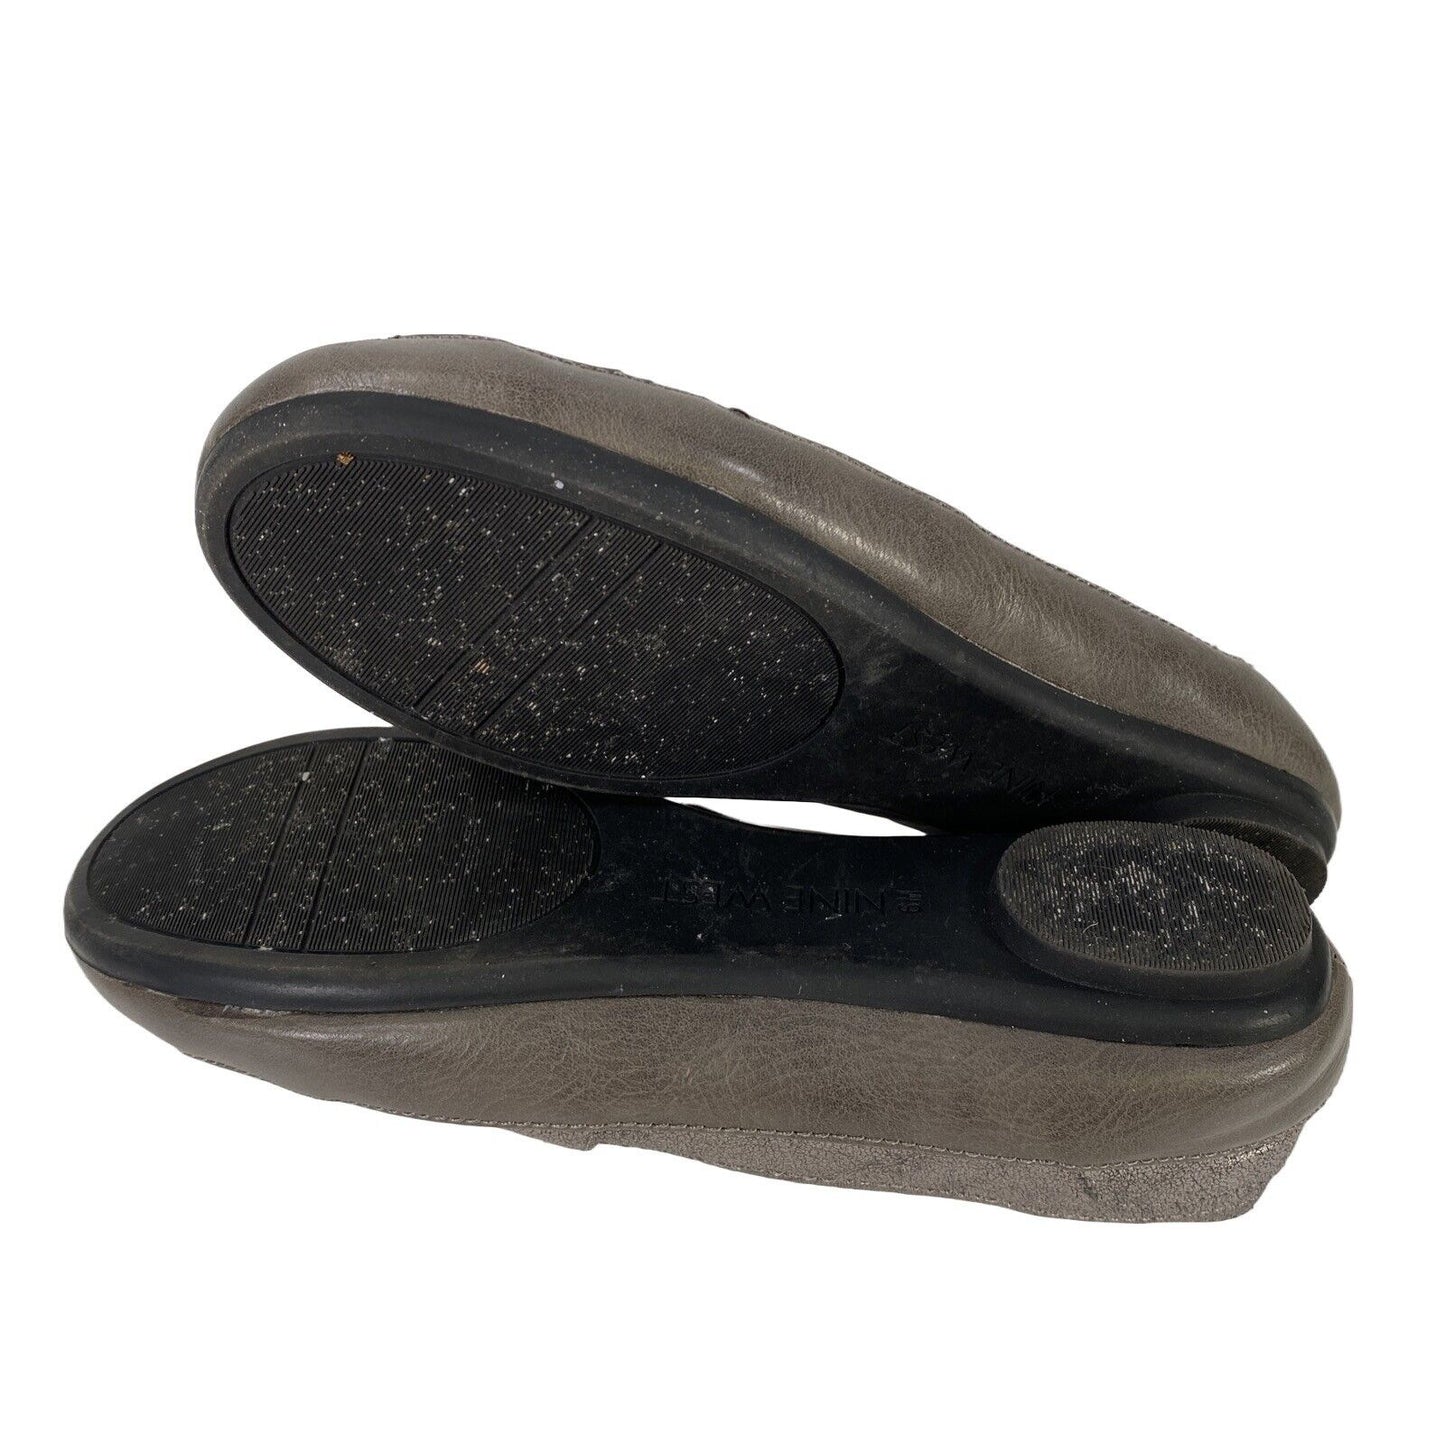 Zapatos planos Gilboy sin cordones para mujer de color gris metalizado de Nine West - 6M